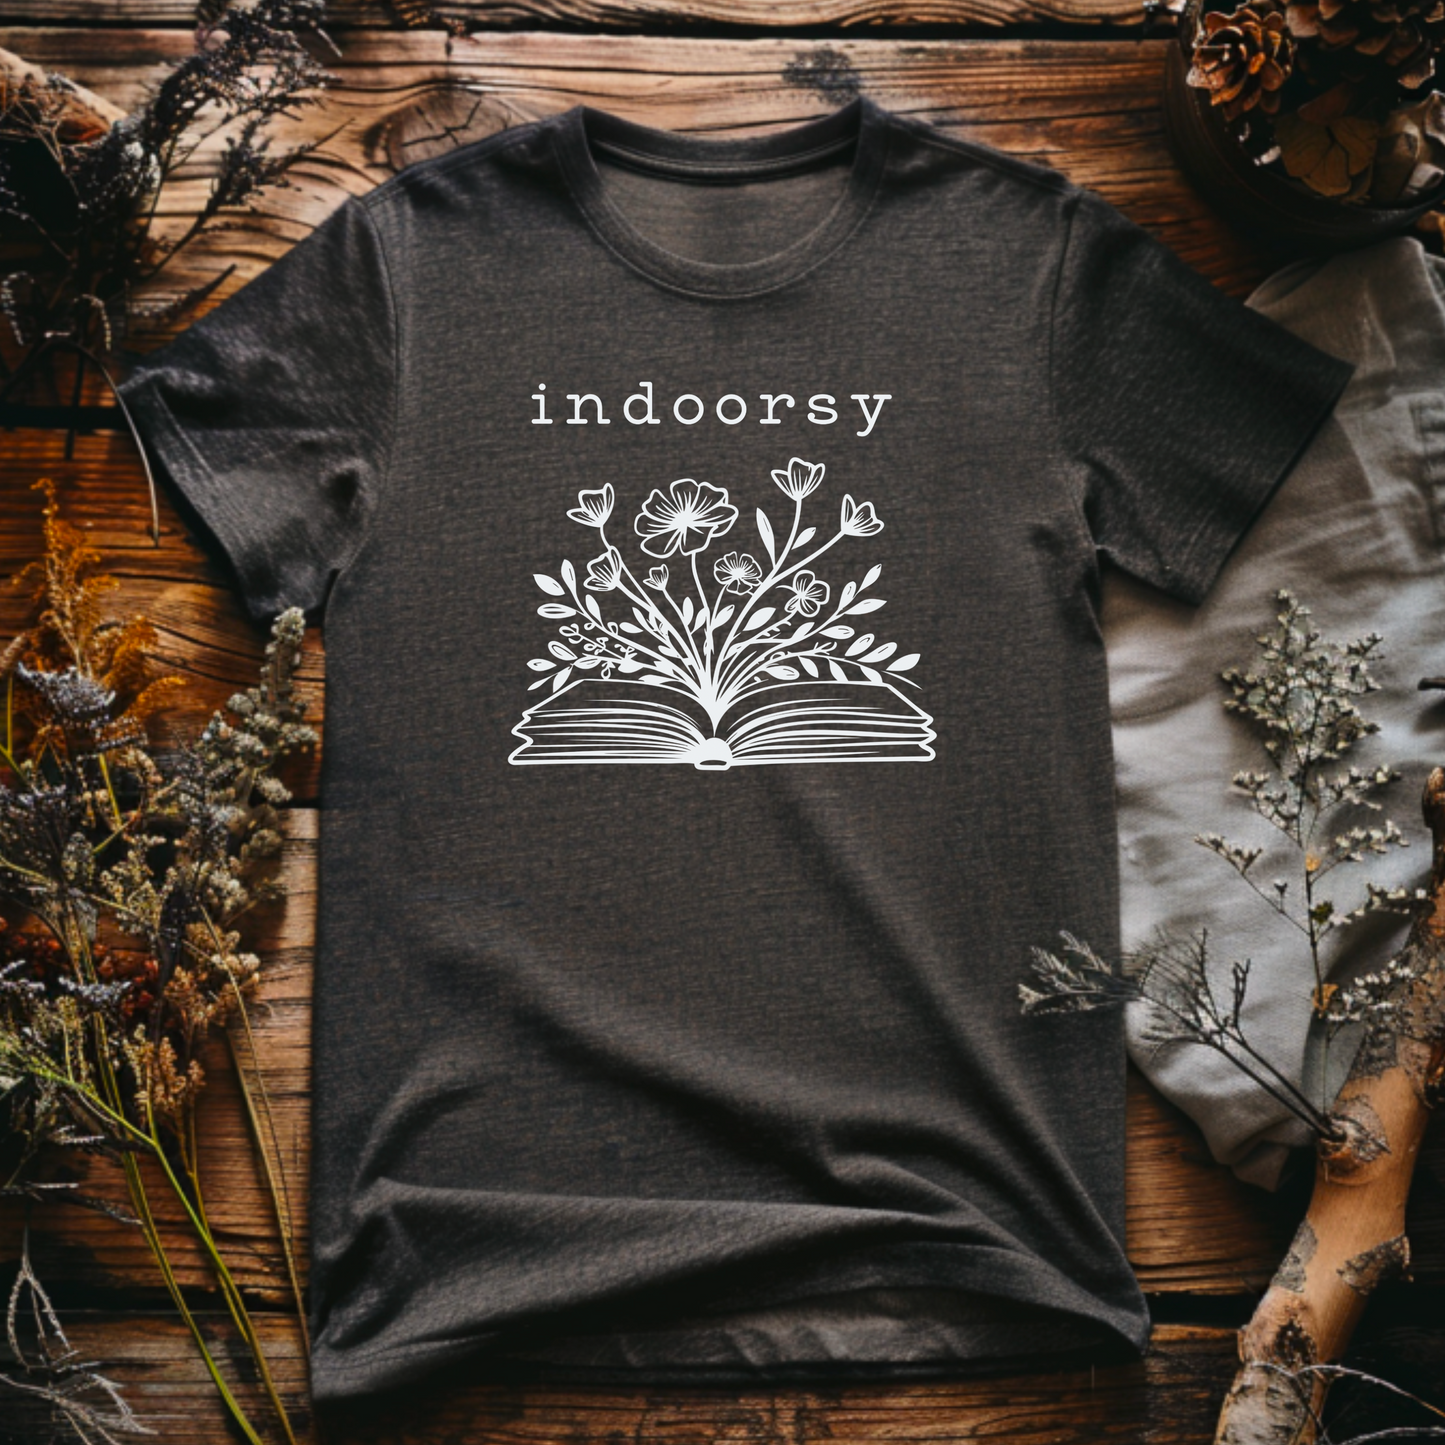 Indoorsy, Premium Unisex Crewneck T-shirt